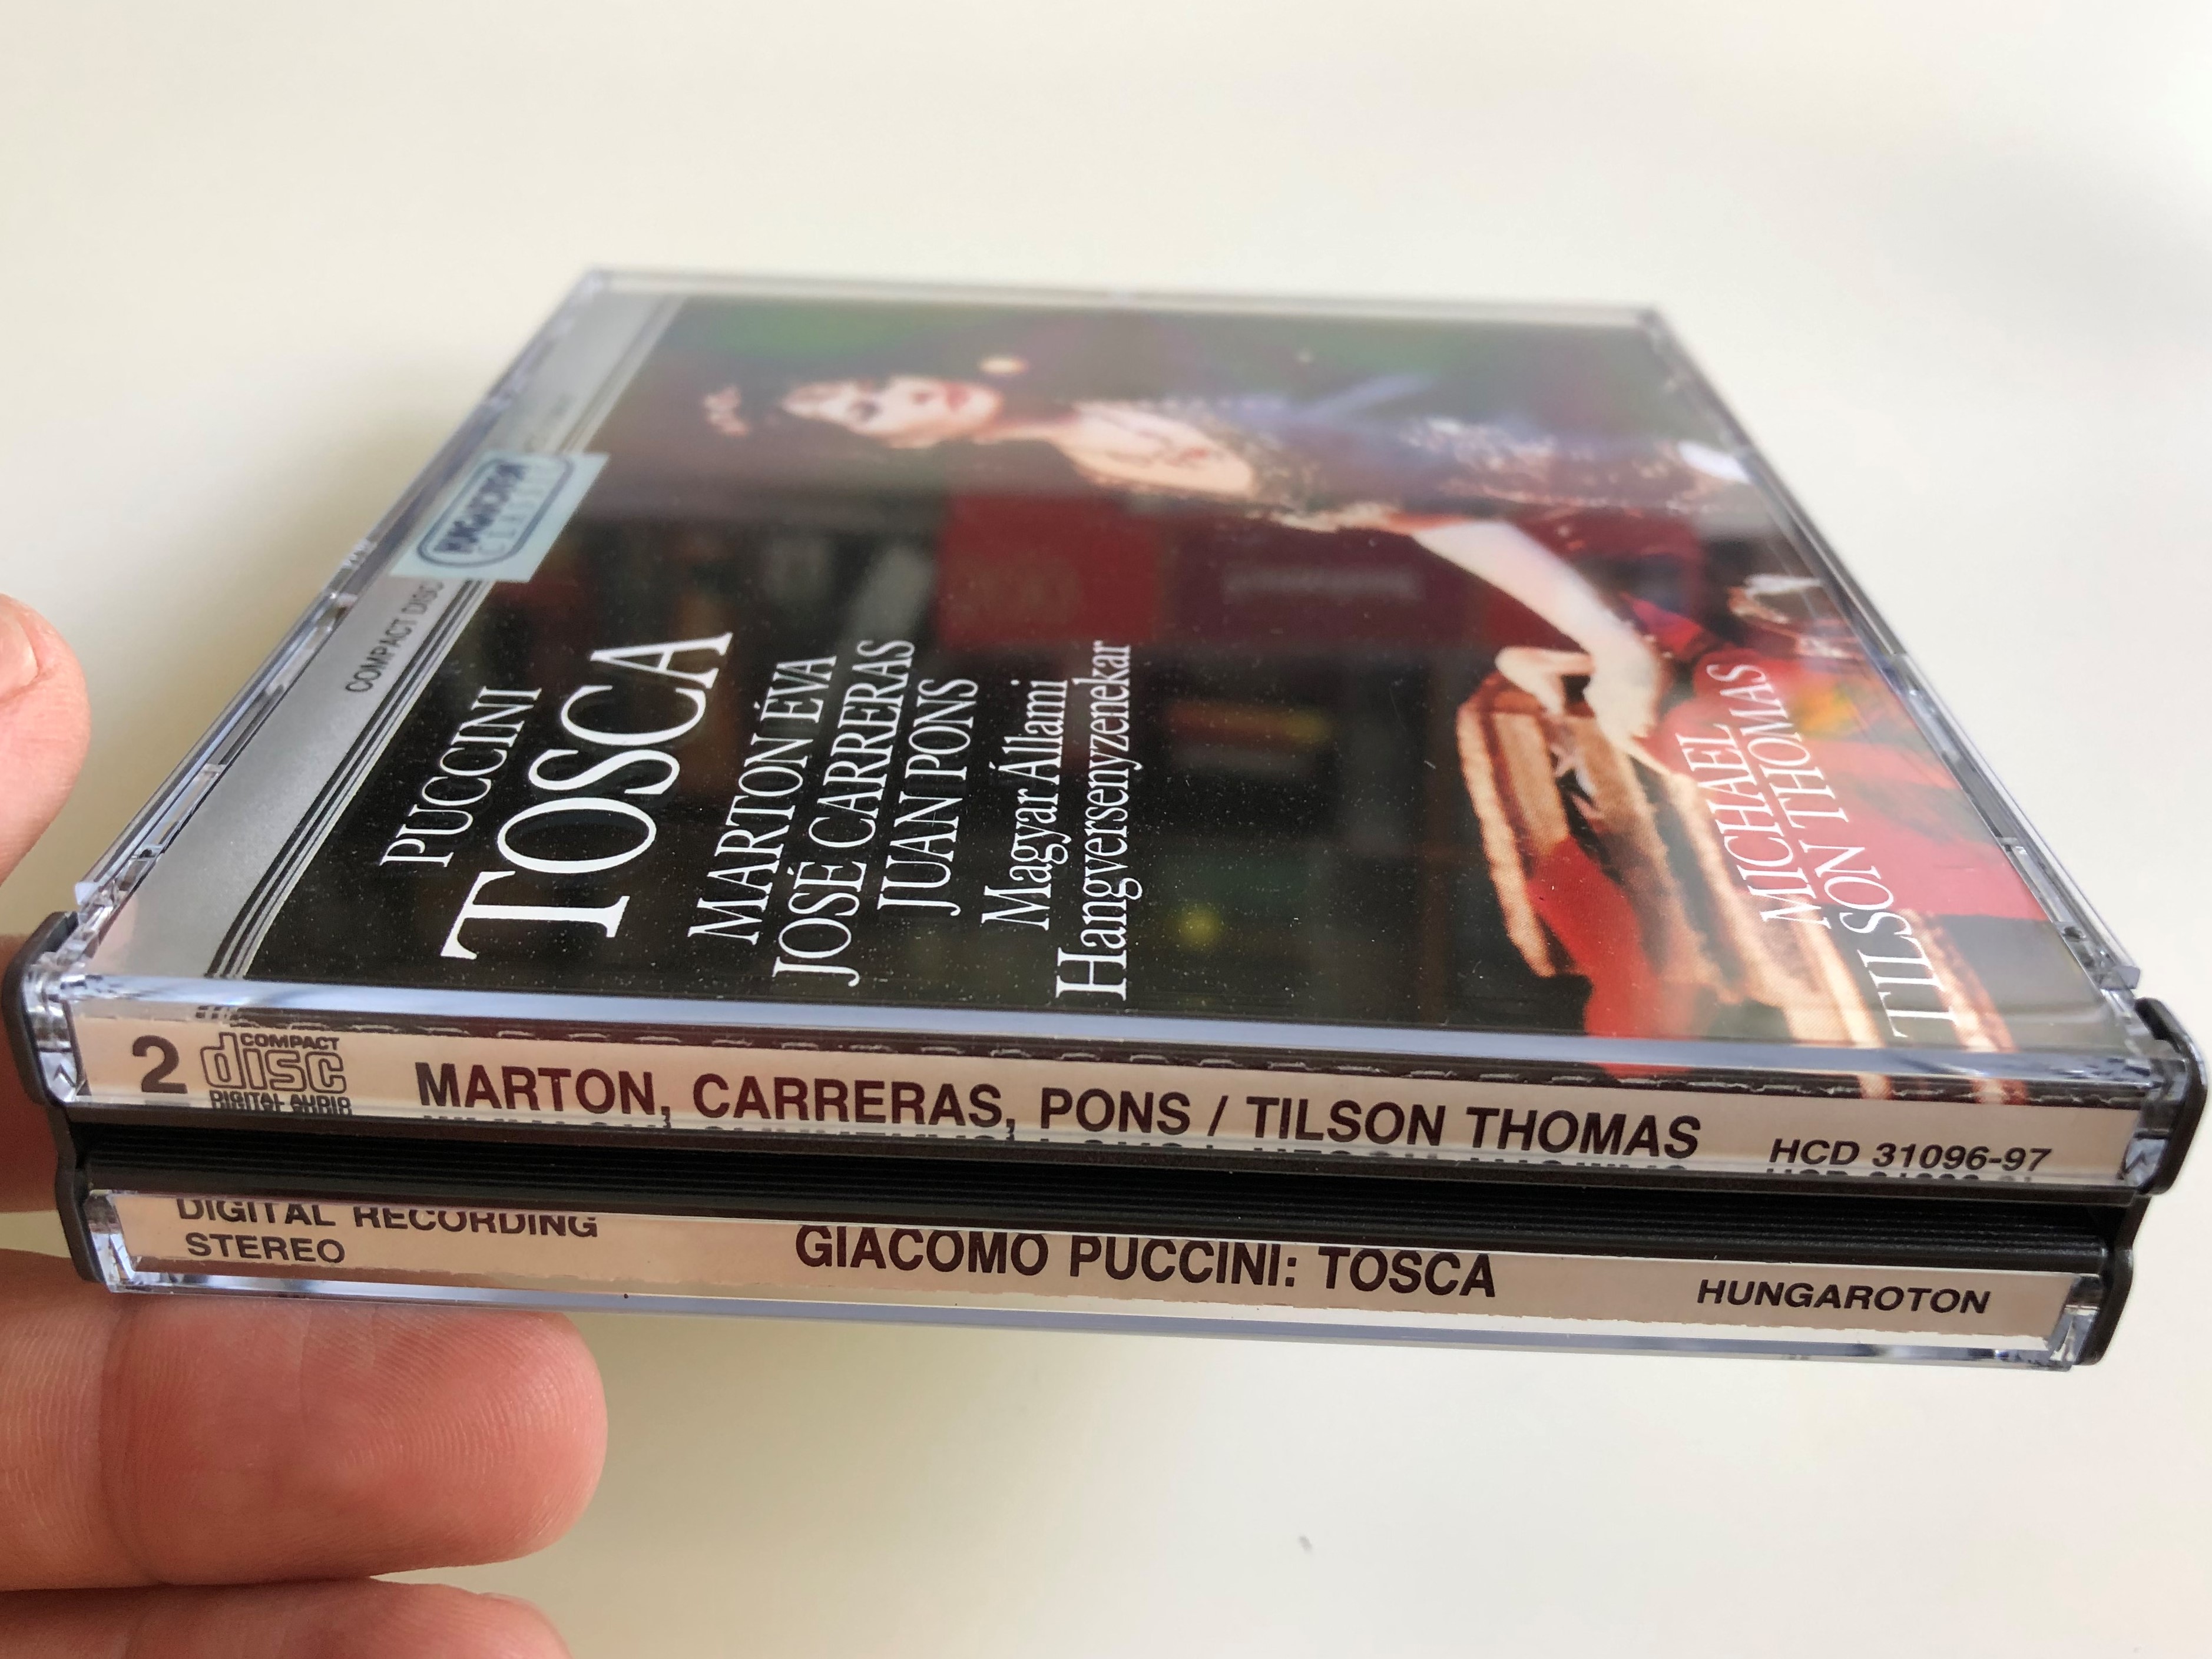 puccini-tosca-marton-va-jos-carreras-juan-pons-magyar-llami-hangversenyzenekar-conducted-by-michael-tilson-thomas-hungaroton-classic-audio-cd-1990-hcd-31096-97-2-cd-14-.jpg